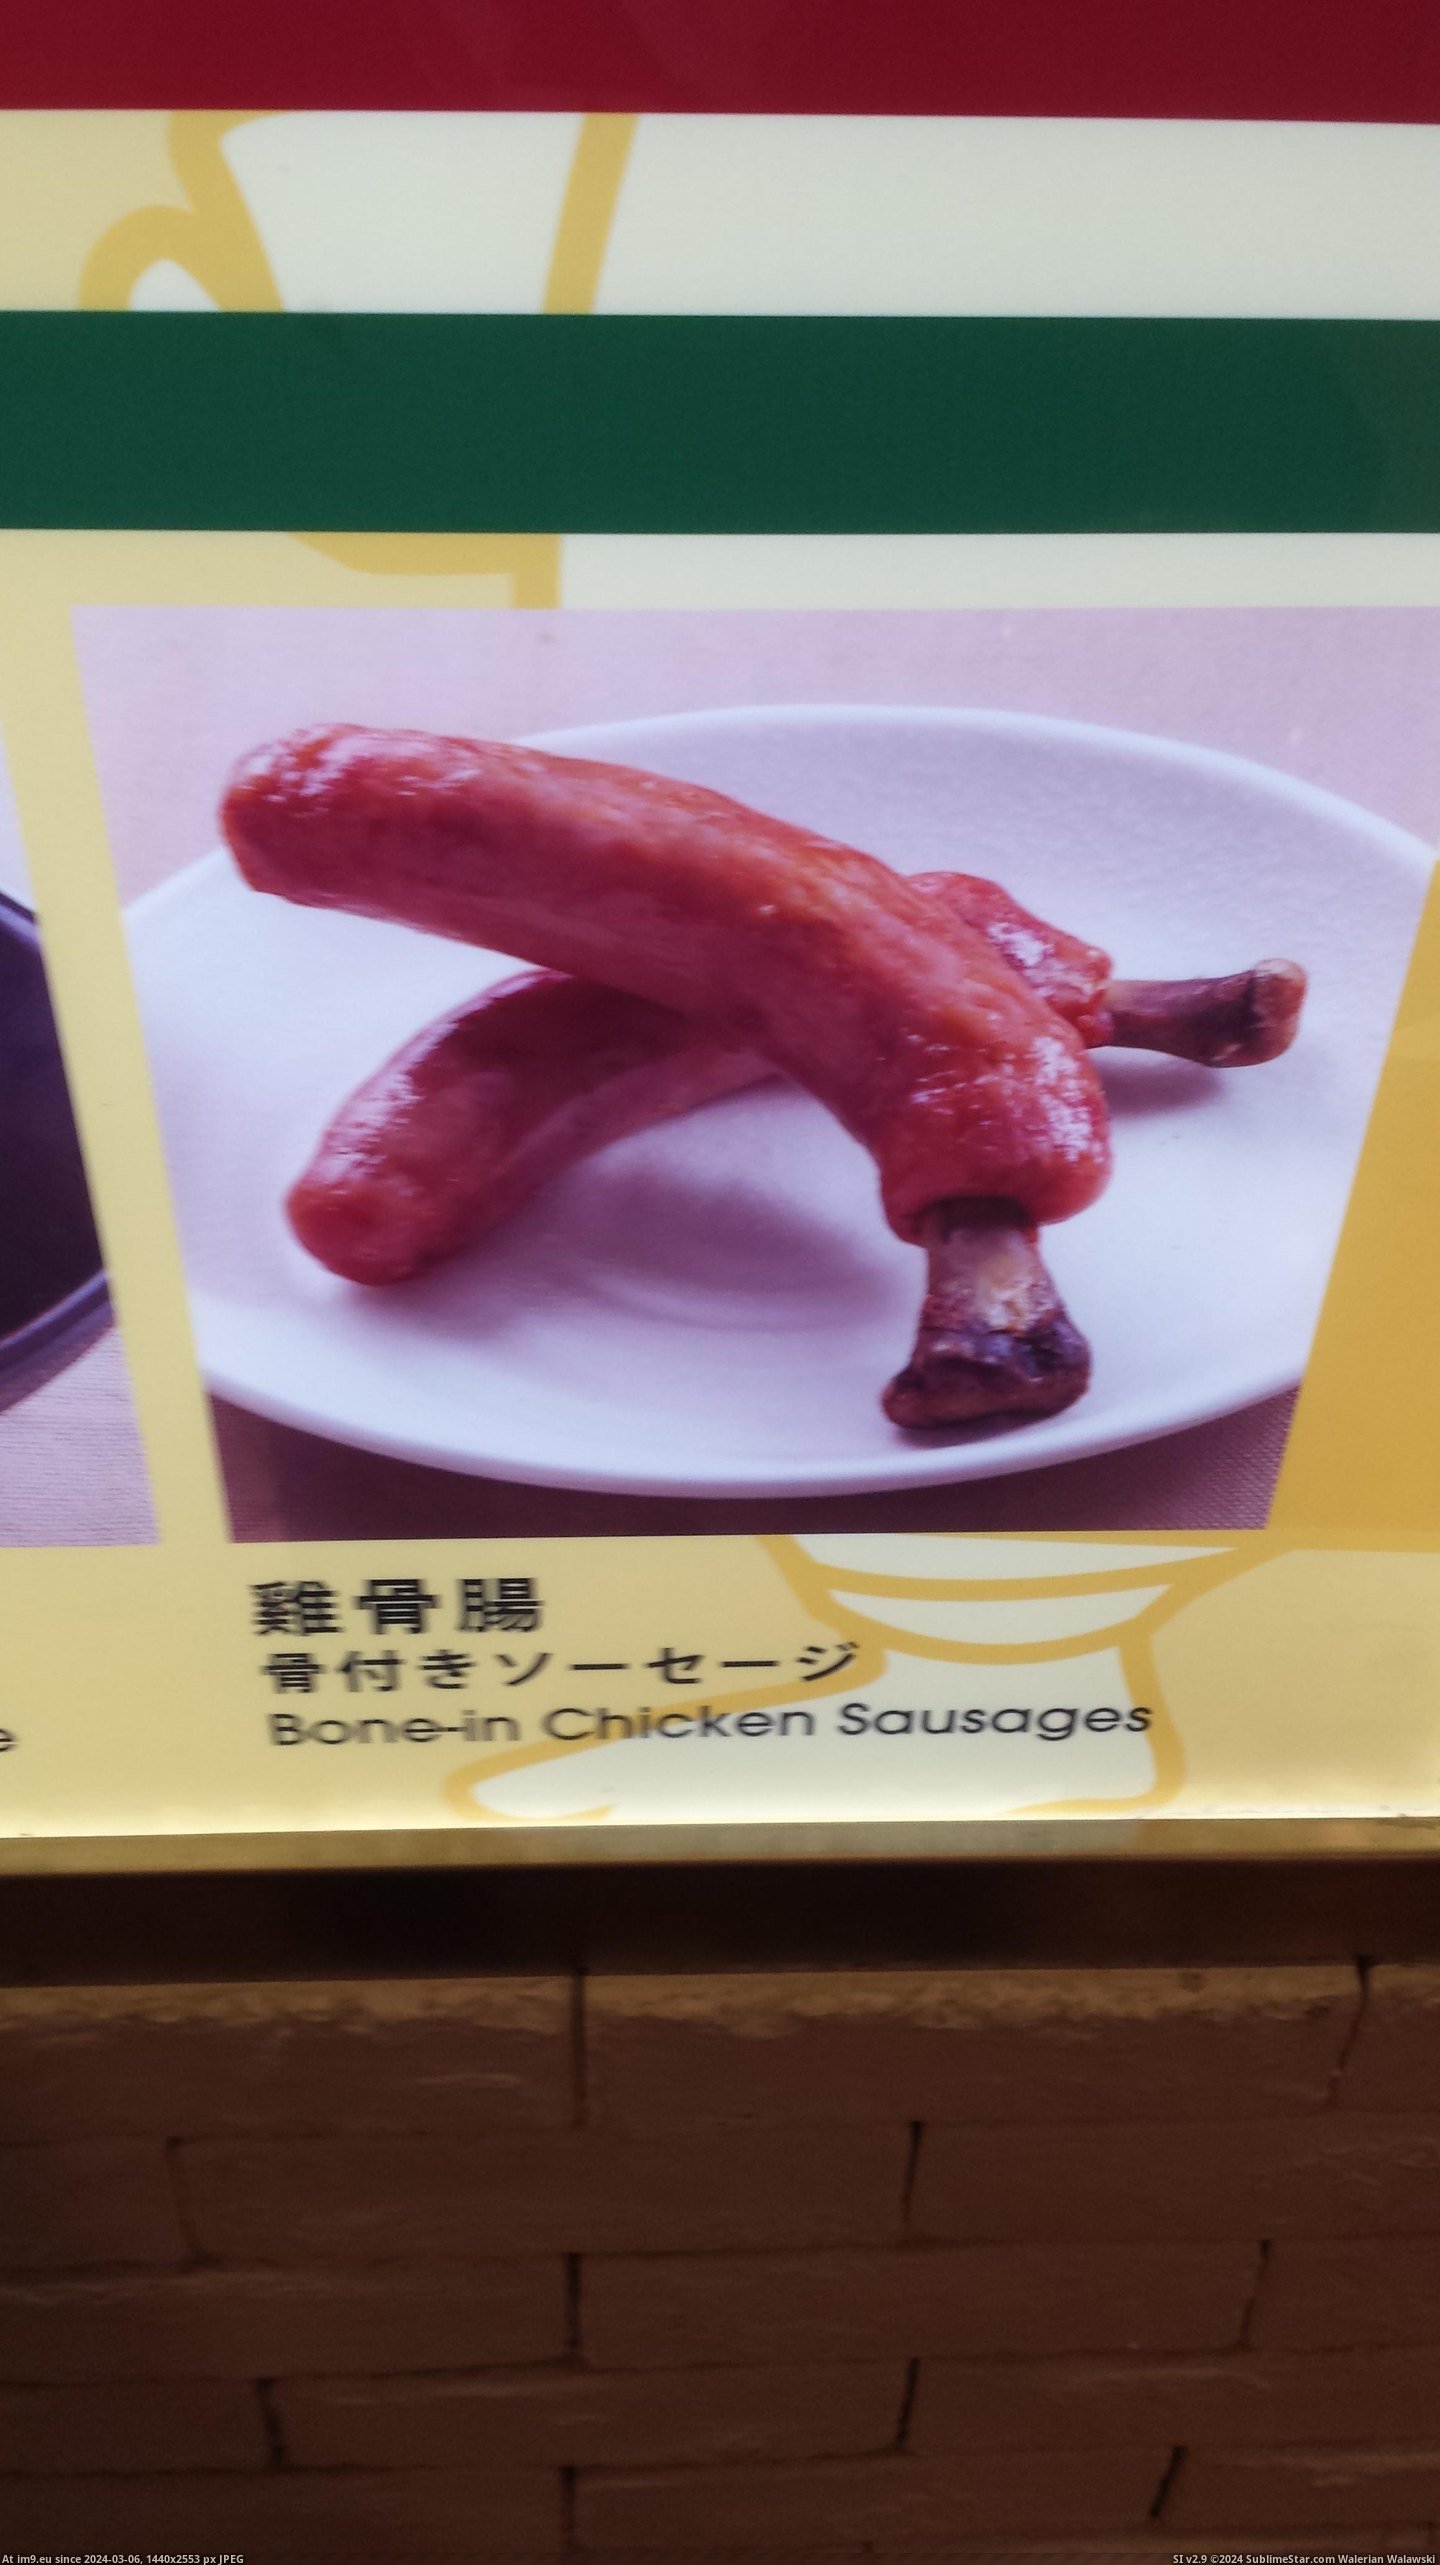 #Wtf #Bone #Sausages #Chicken [Wtf] 'Bone-in' chicken sausages Pic. (Bild von album My r/WTF favs))